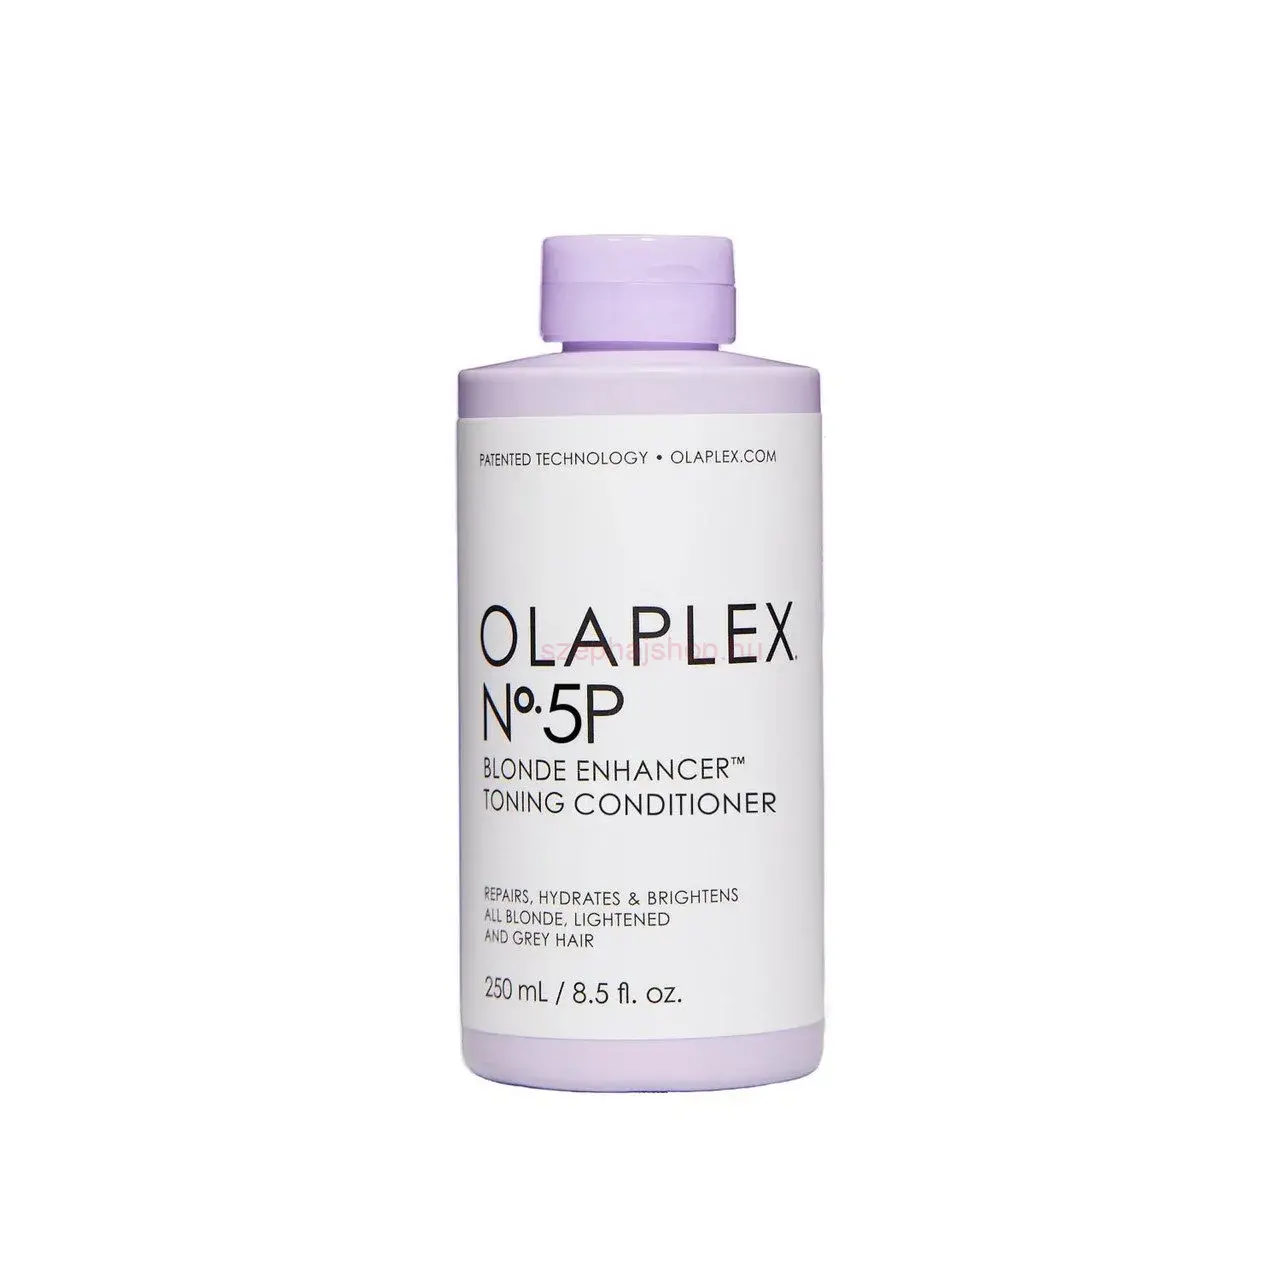 Olaplex Blonde Enhancer Toning Conditioner No.5P 250 ml